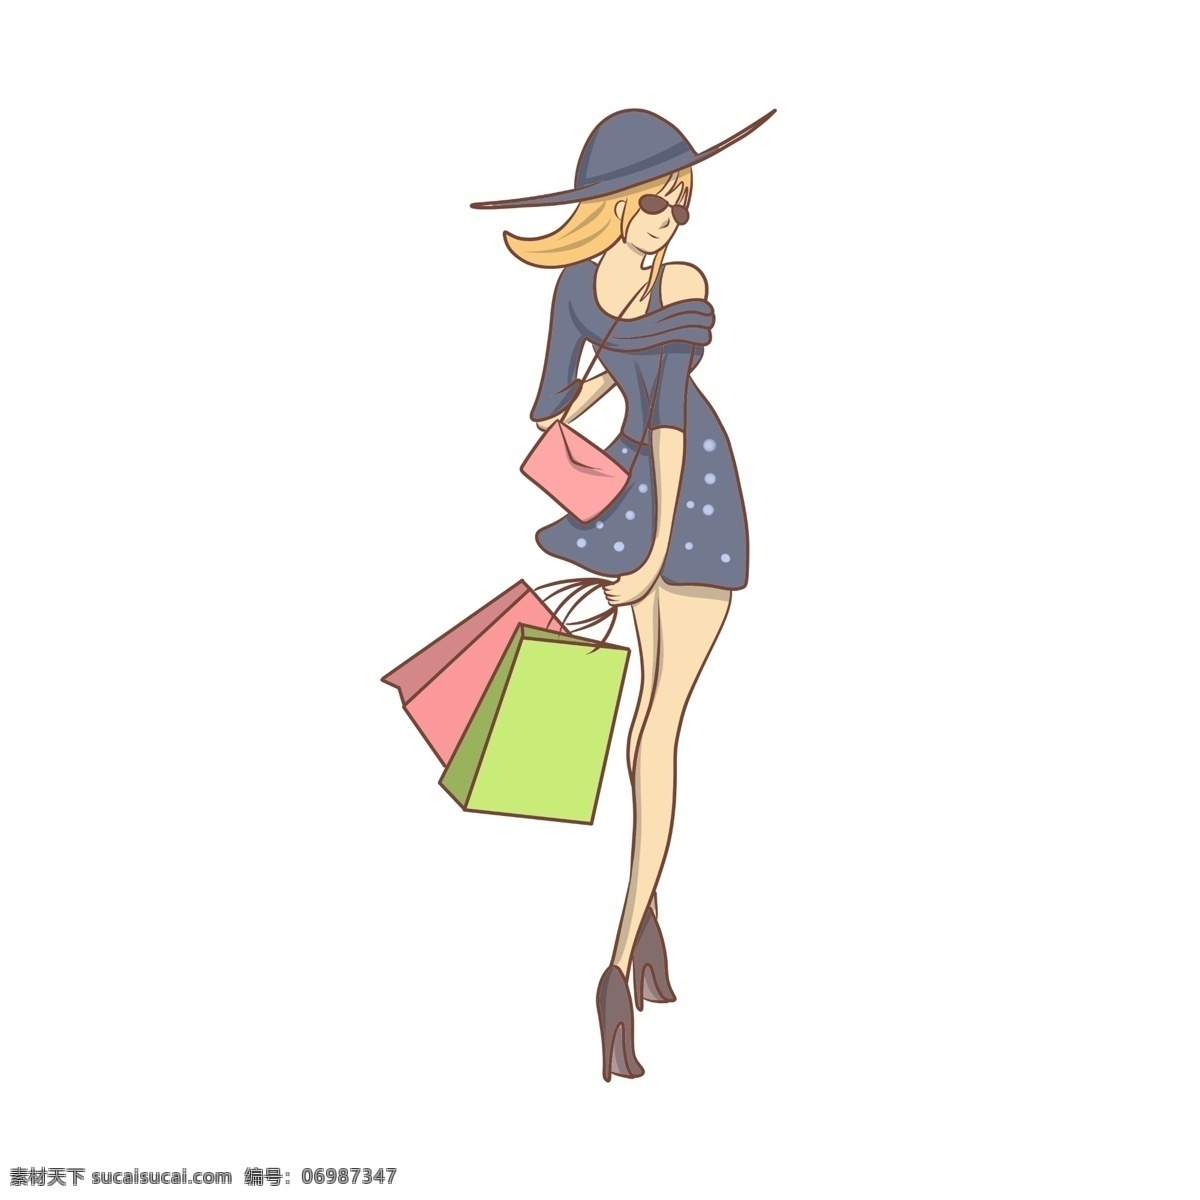 时尚 女士 商场 狂 购 插画 双十一 促销 手绘 时尚女士 狂购 商场狂欢节 低价狂潮 狂购女士